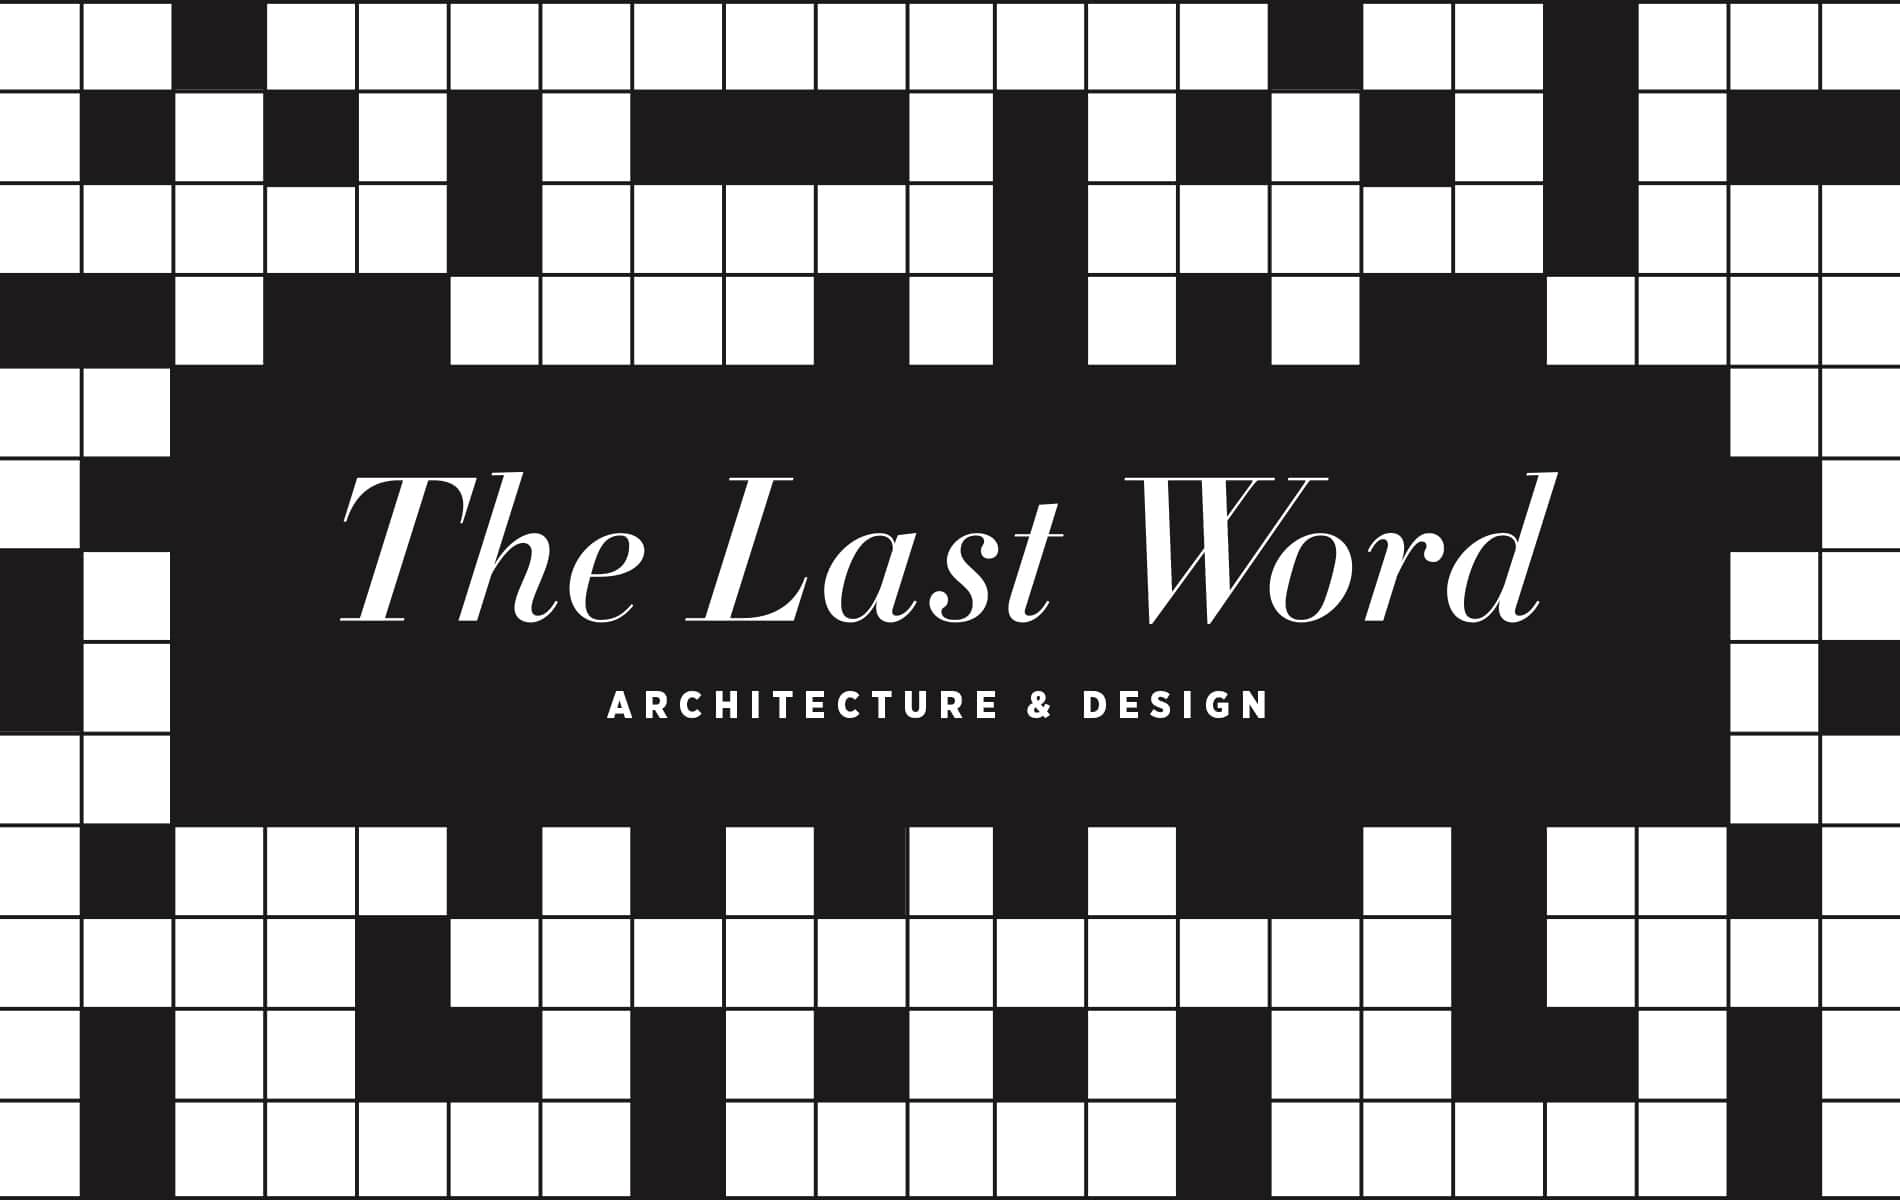 VIE Magazine August 2019 Architecture & Design Issue, Crossword Puzzle